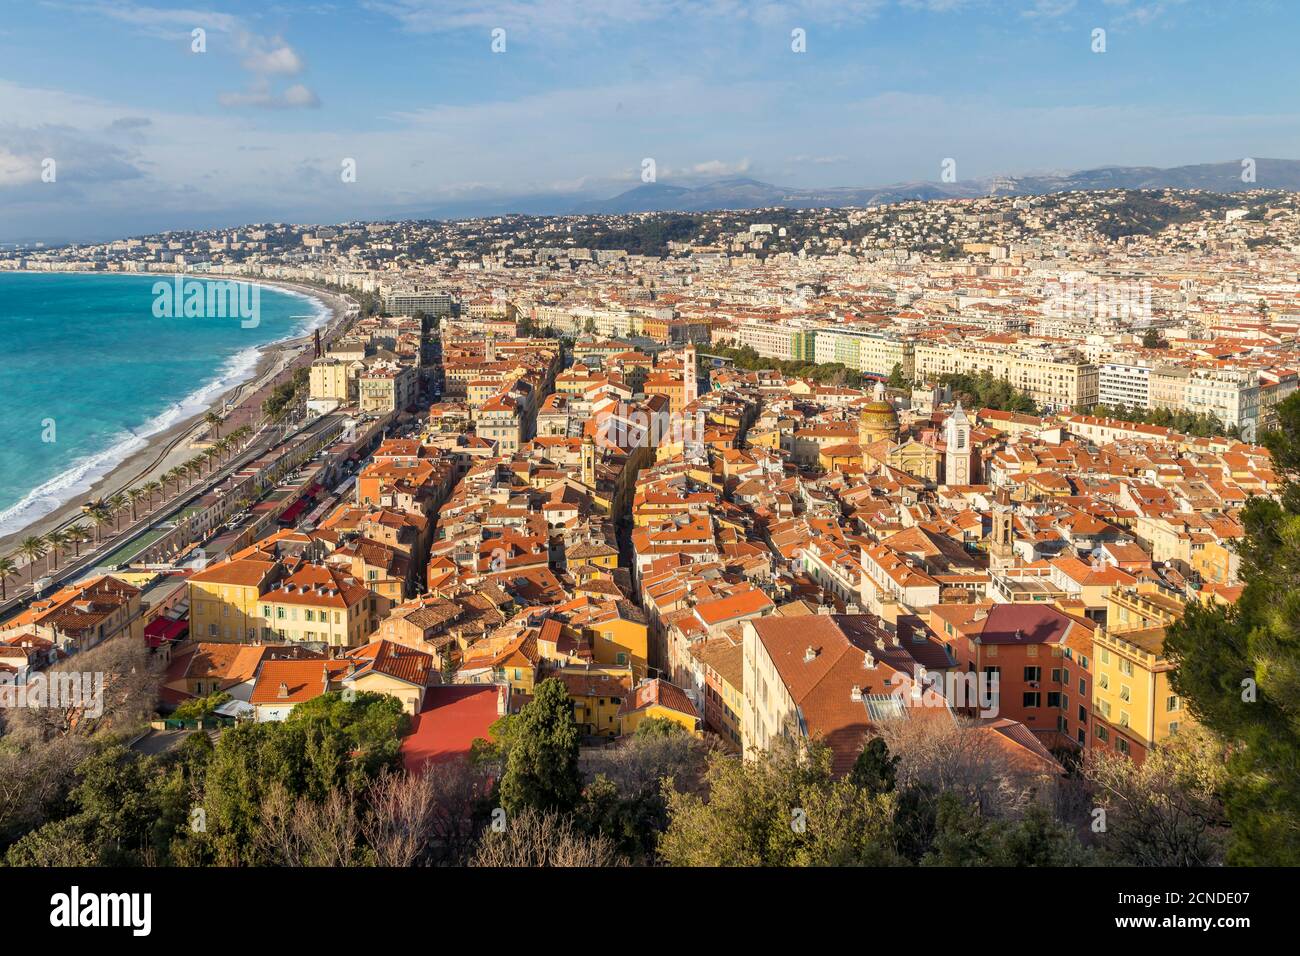 Vue depuis la colline du château jusqu'à la vieille ville de Nice, les Alpes Maritimes, la Côte d'Azur, la Côte d'Azur, la Provence, la France, la Méditerranée, l'Europe Banque D'Images